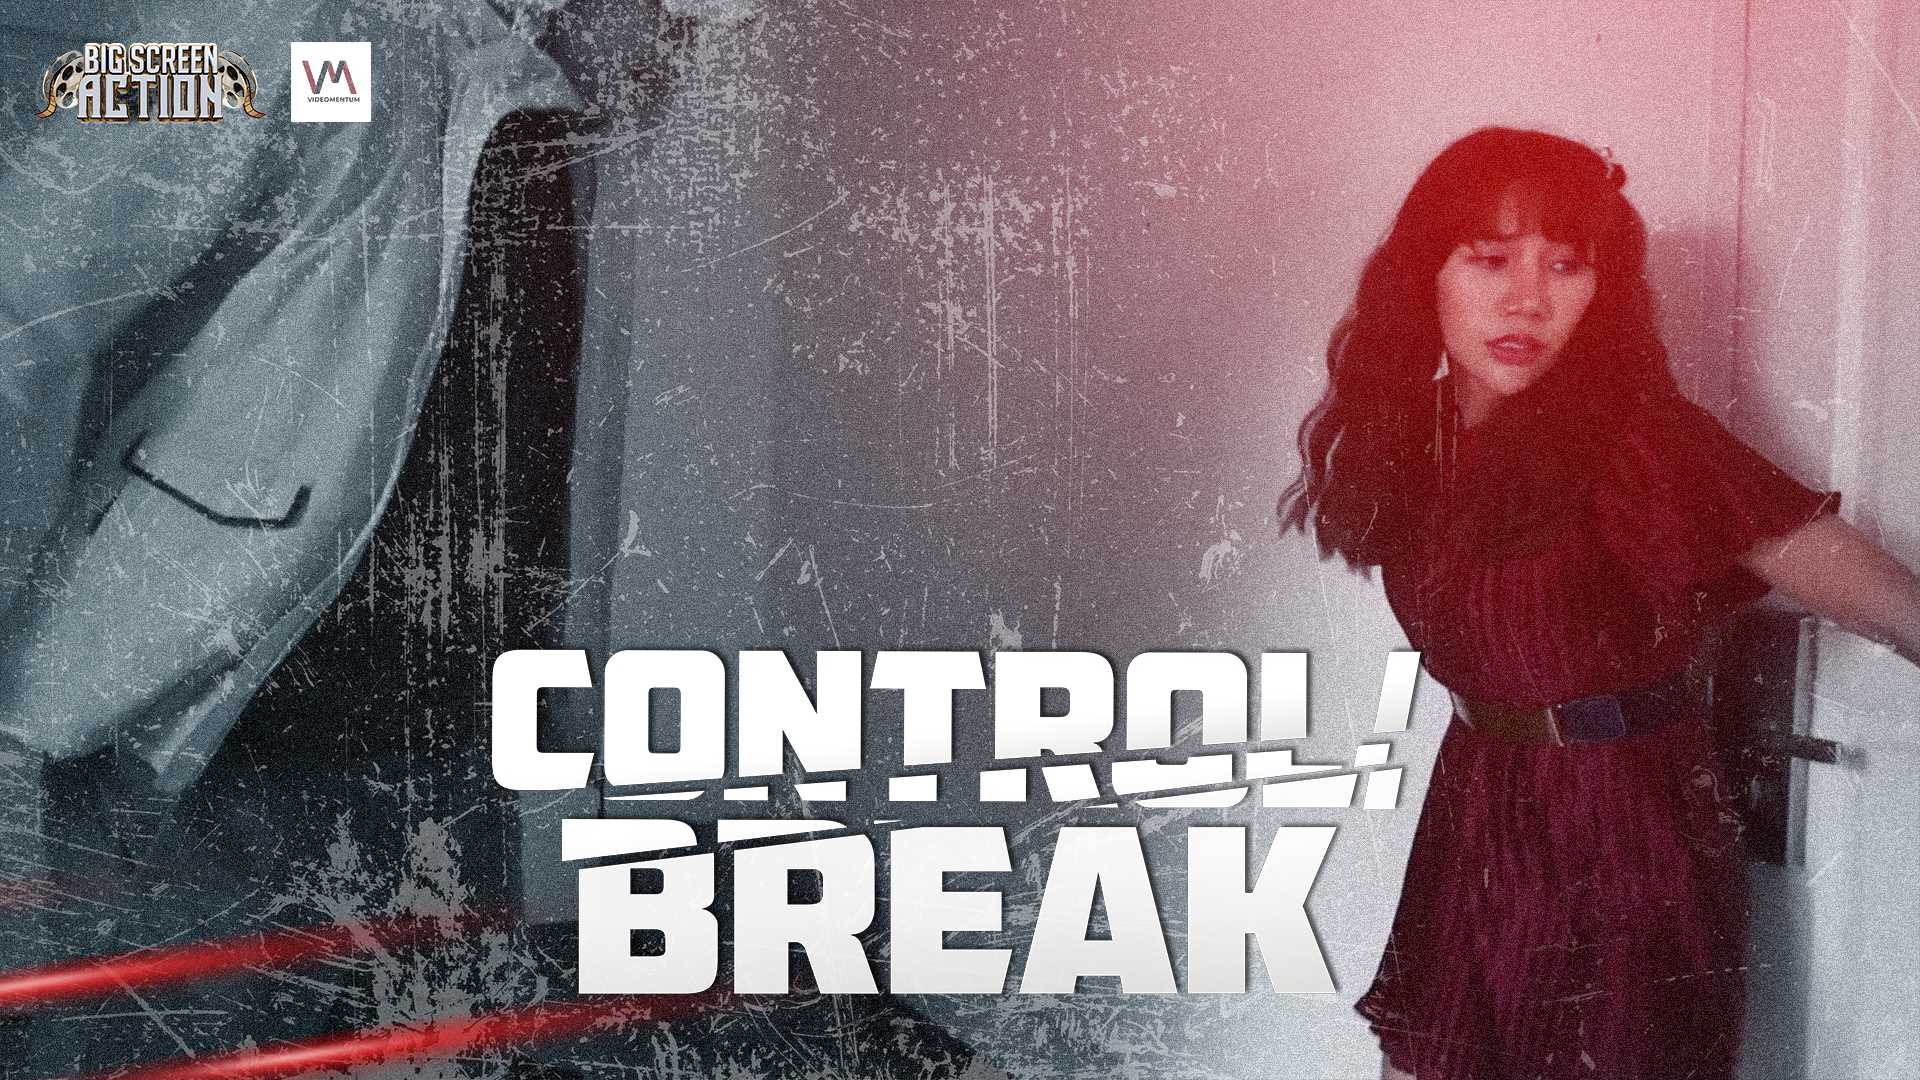 #8 - Control/Break